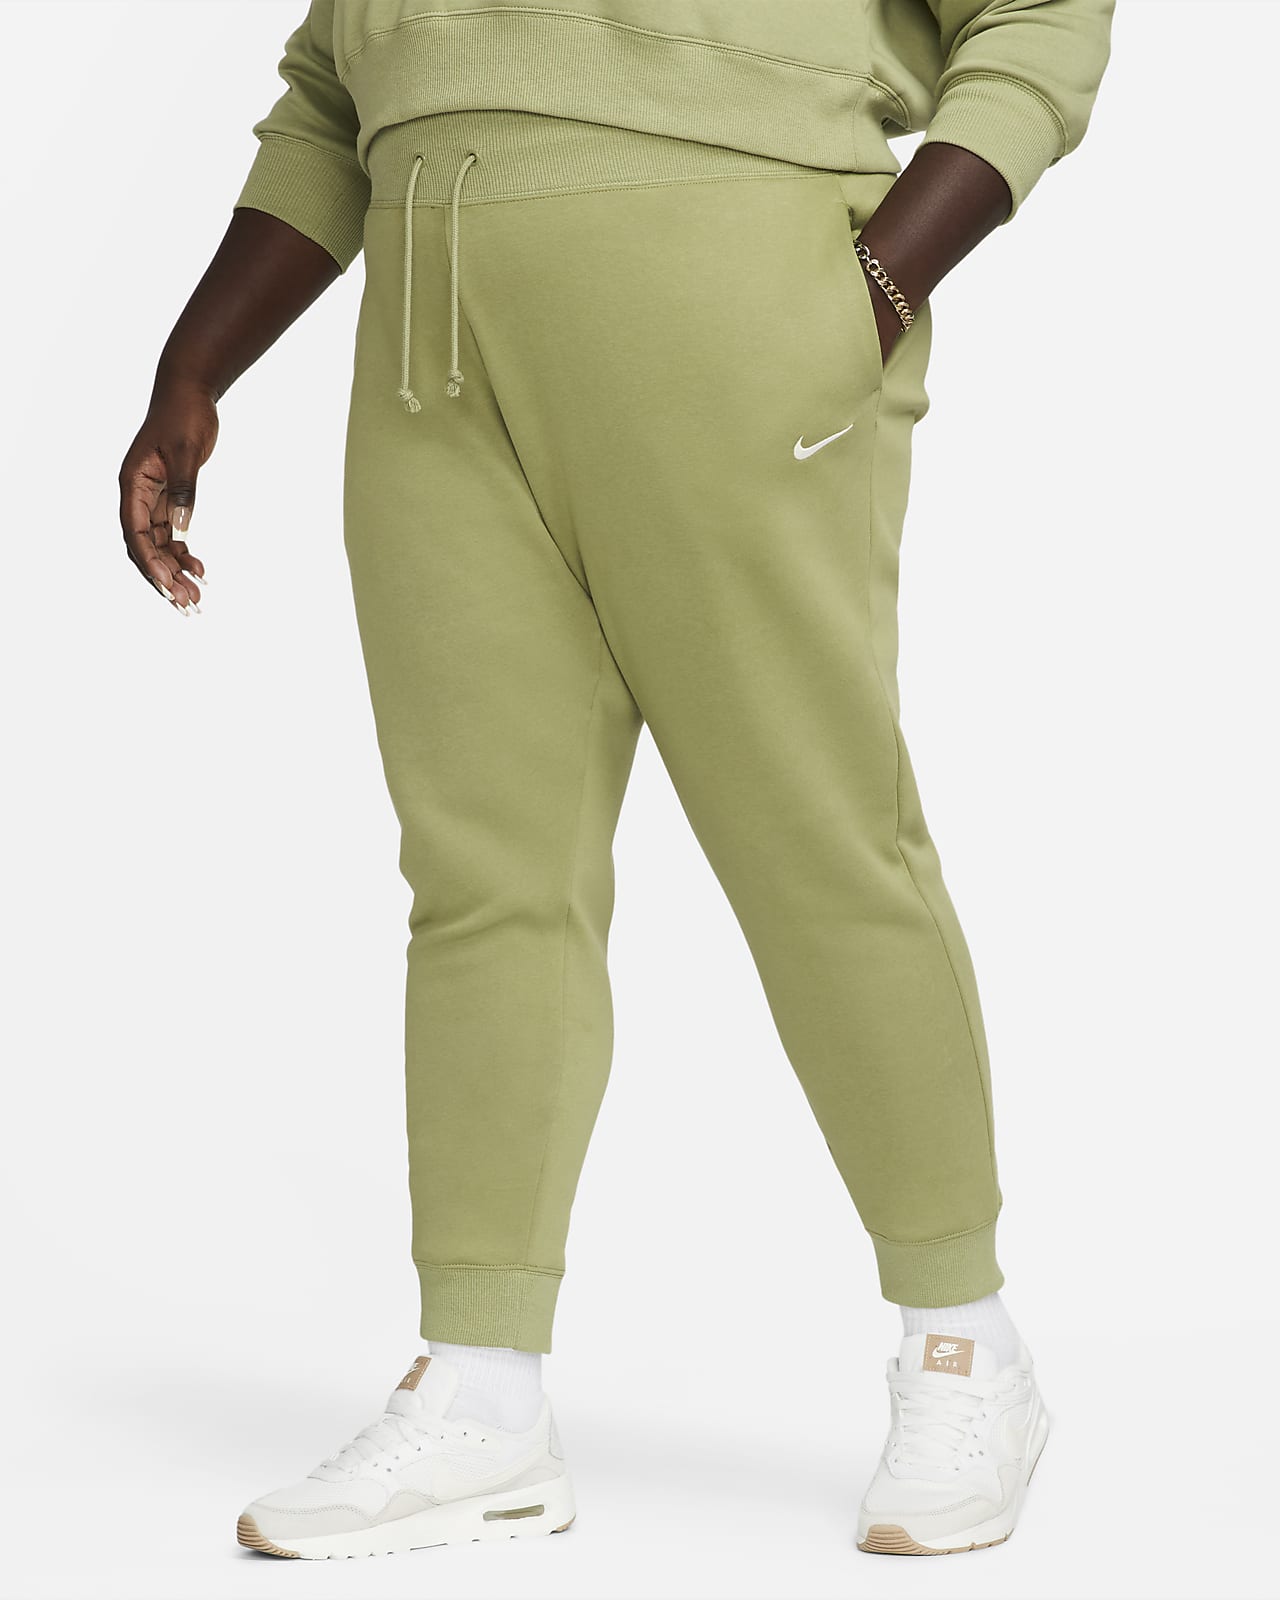 Nike Sportswear Phoenix Fleece magas derekú női szabadidőnadrág (plus size méret)